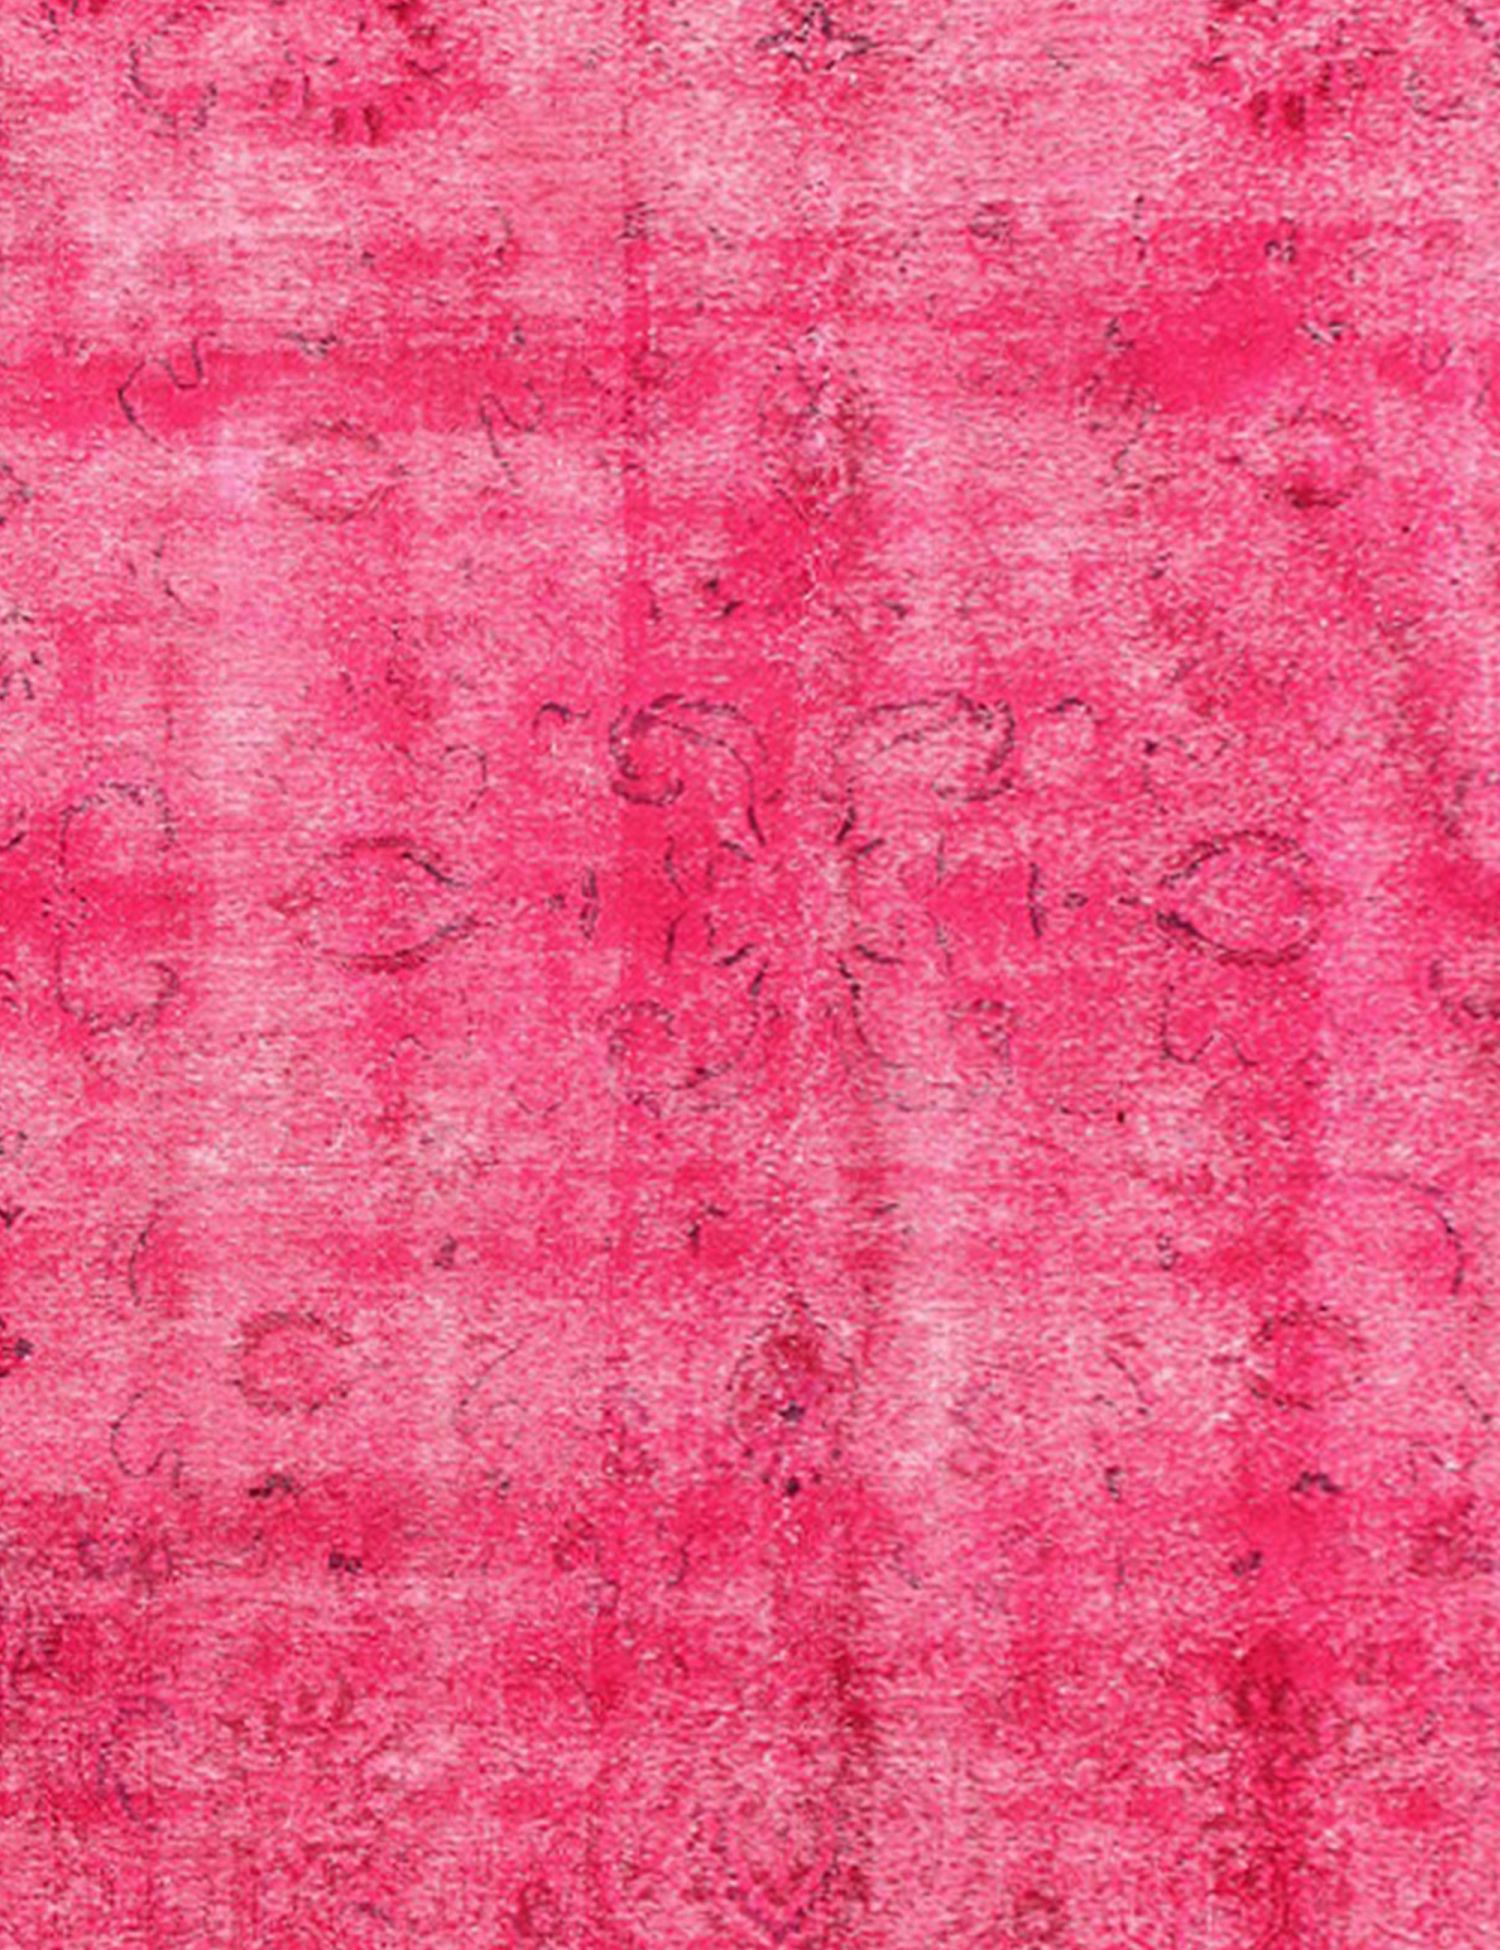 Persischer Vintage Teppich  rosa <br/>355 x 270 cm